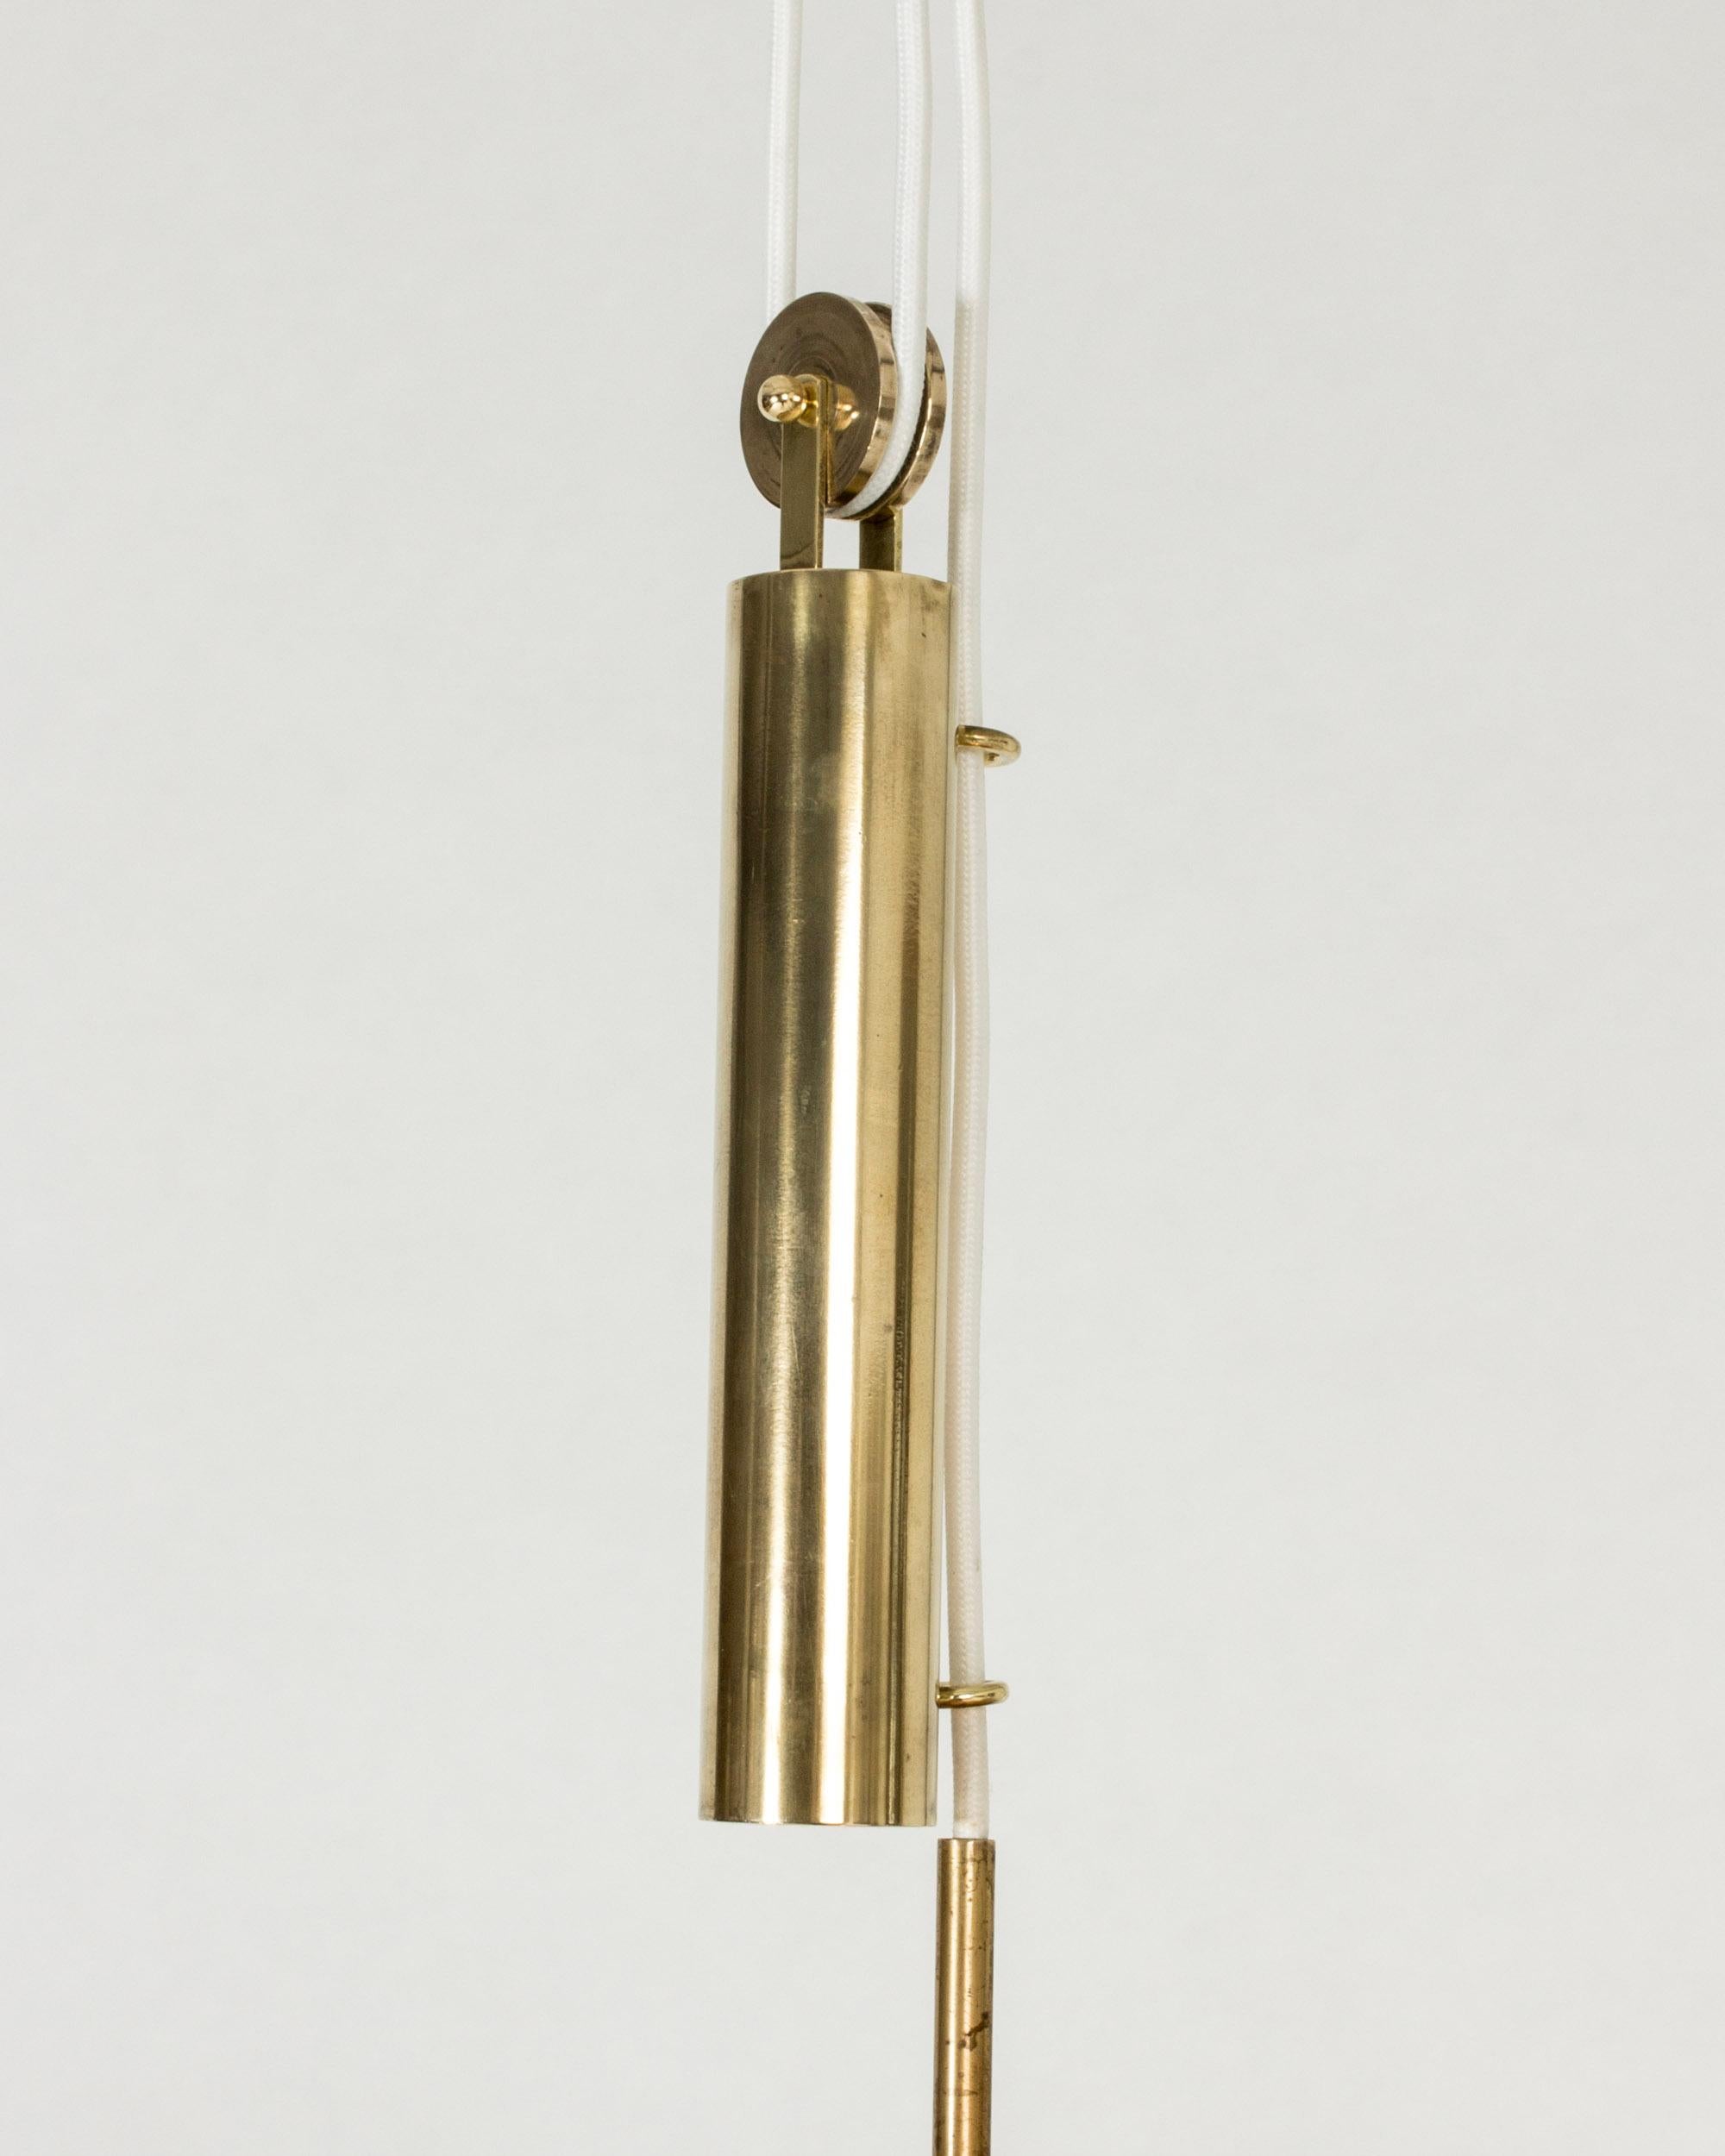 Brass Midcentury Modern Pendant Light by Josef Frank, Svenskt Tenn, Sweden, 1950s